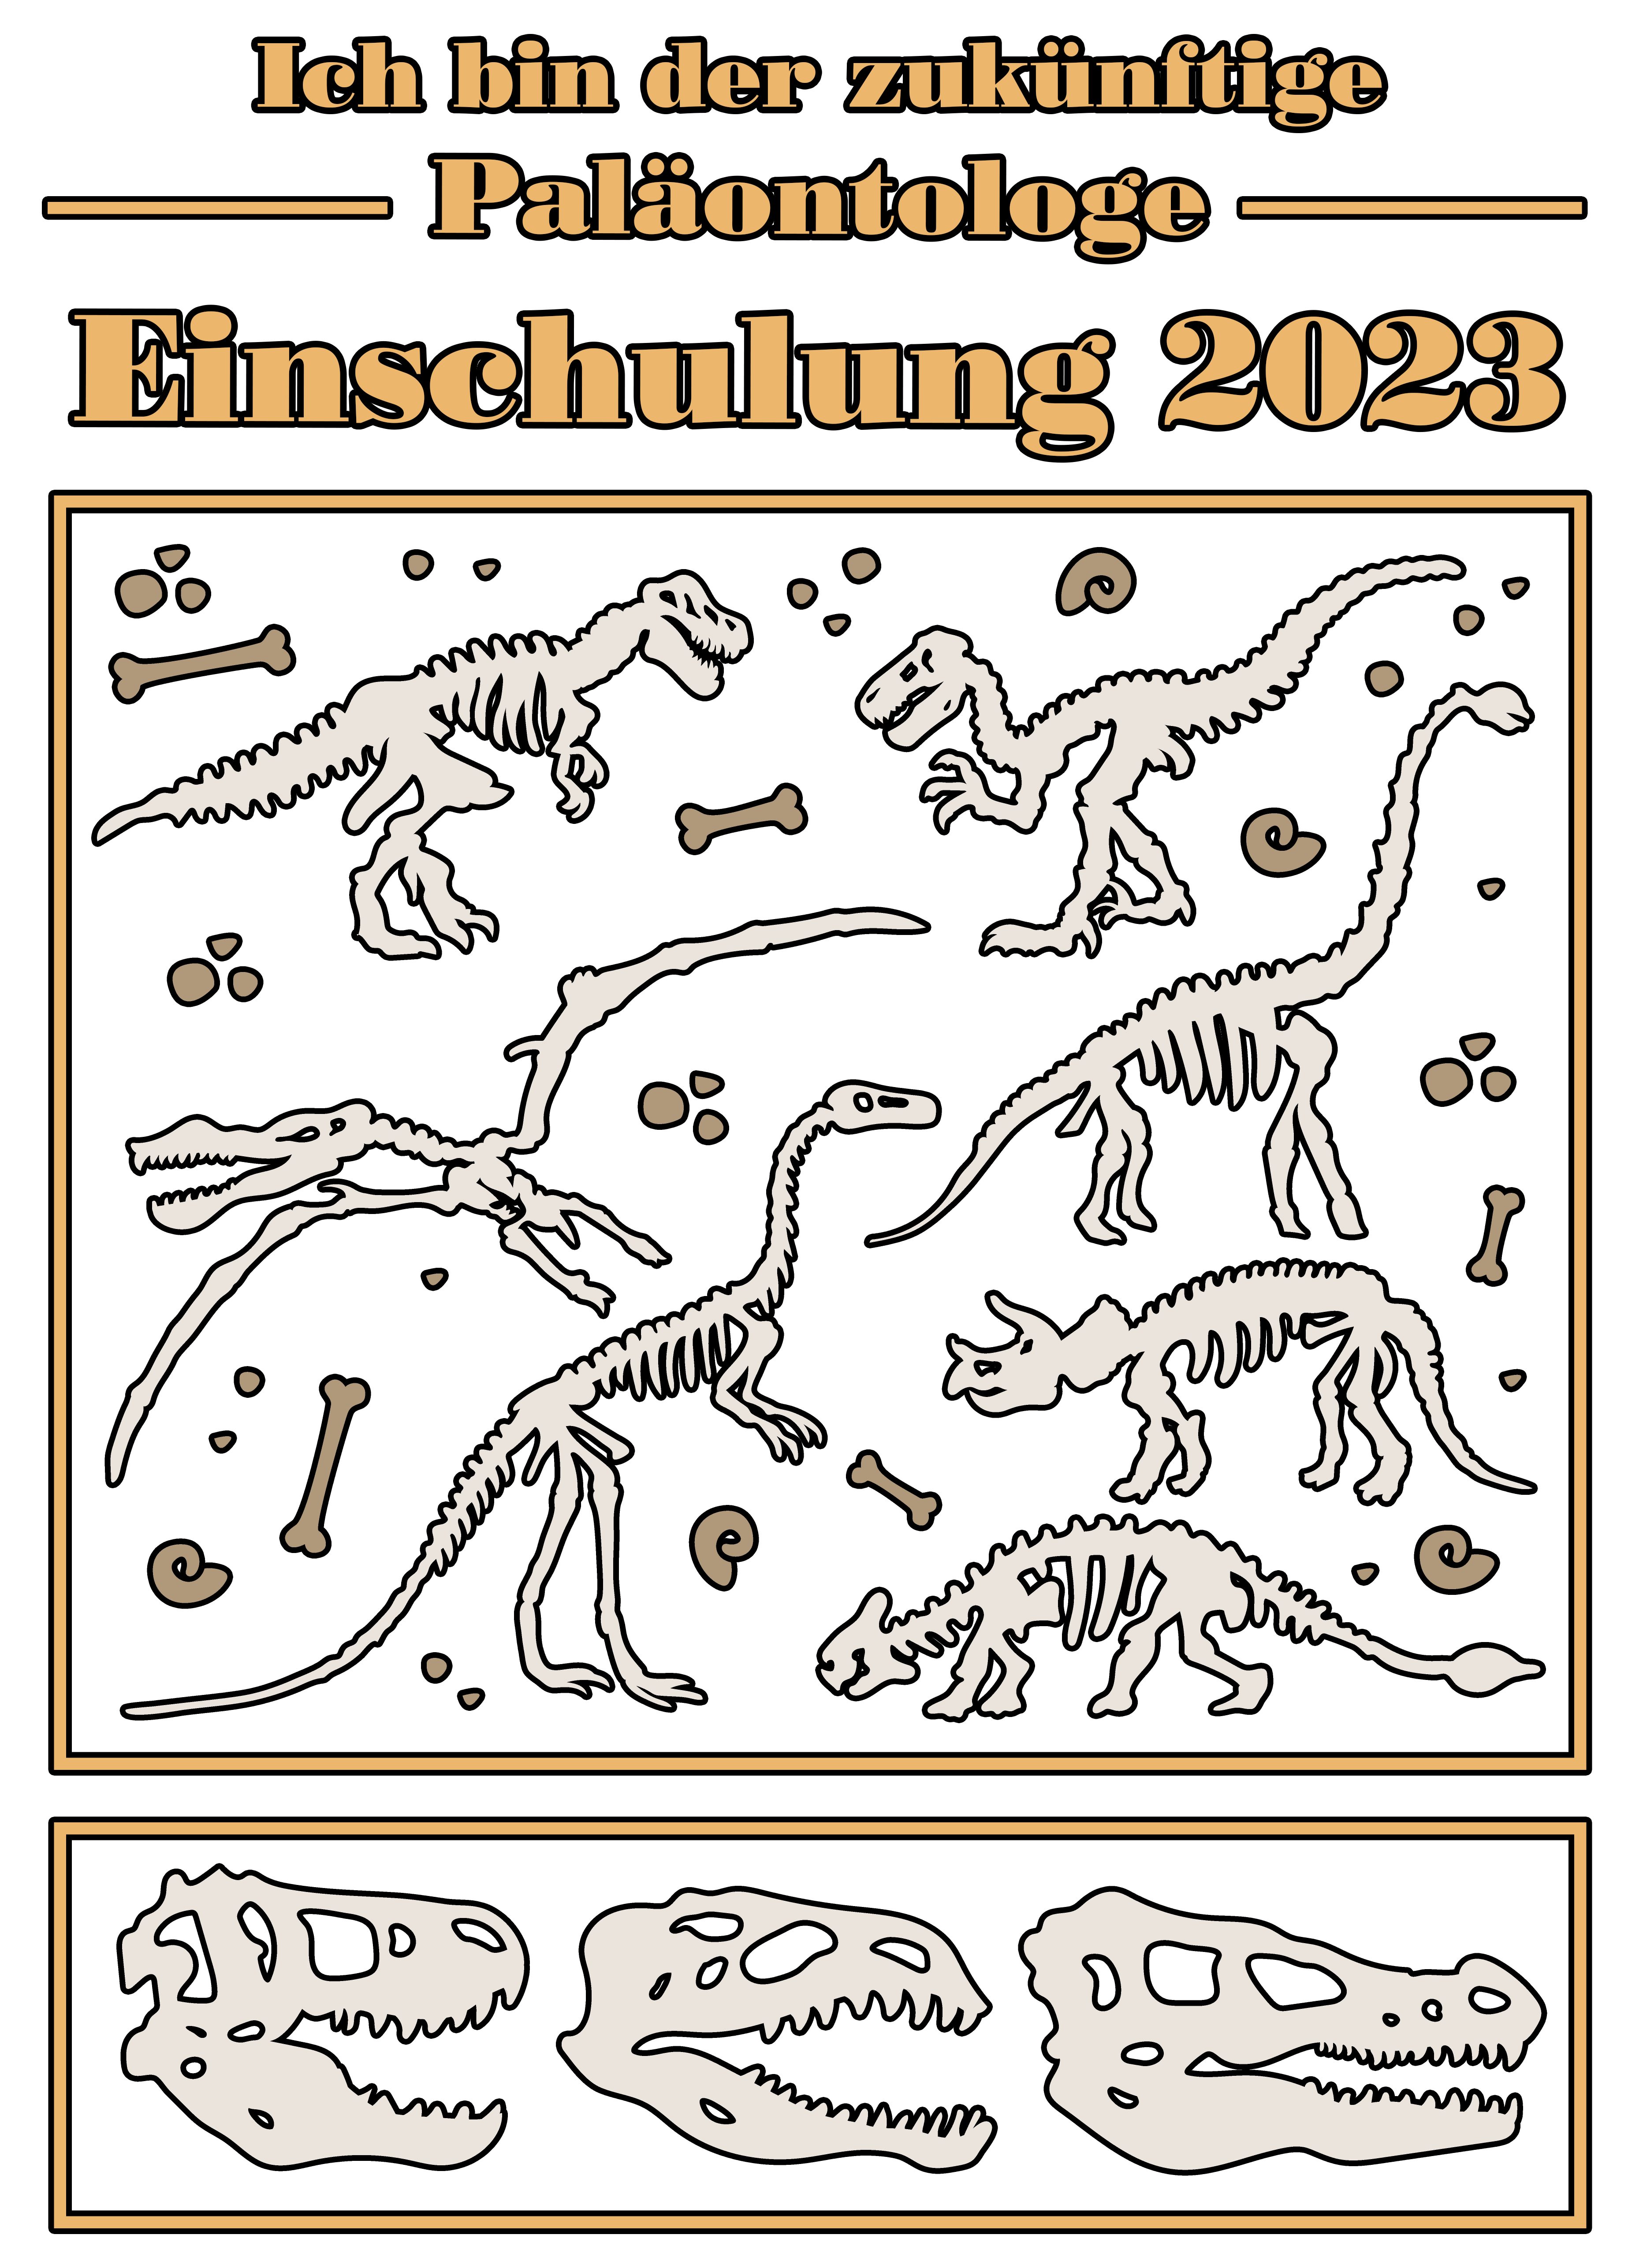 Einschulung Skeletten schwarz, blau, 2023, MyDesign24 blau bedrucktes Baumwollshirt i36 weiß, Dino Print-Shirt rot, zukünftige mit navy T-Shirt Paläontologe Kinder